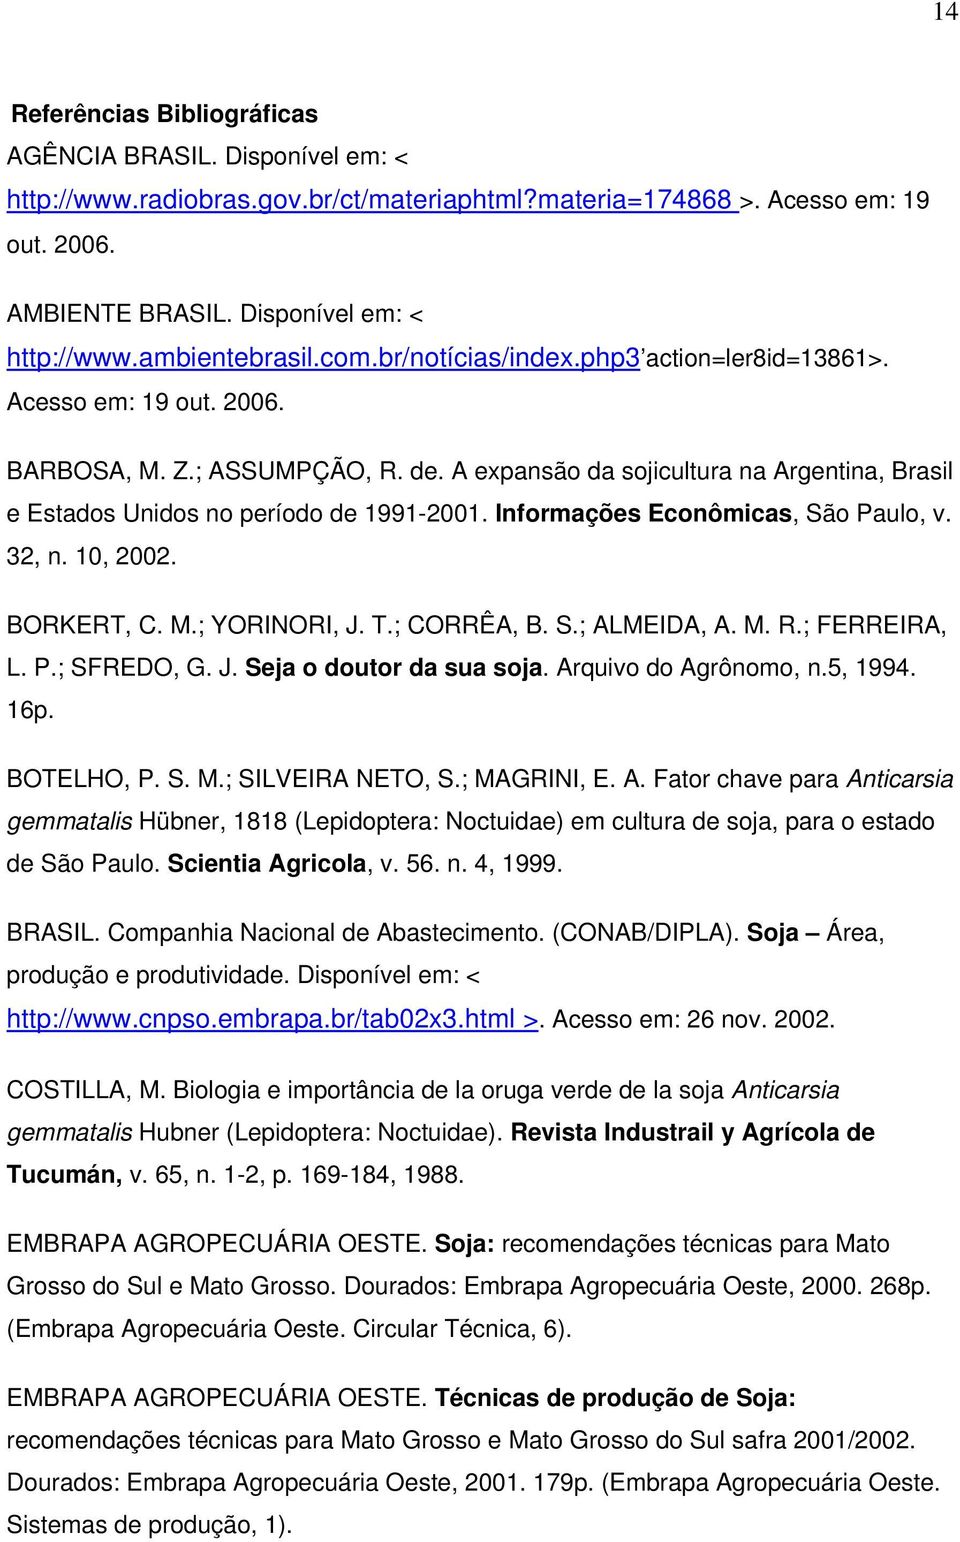 Informações Econômicas, São Paulo, v. 32, n. 10, 2002. BORKERT, C. M.; YORINORI, J. T.; CORRÊA, B. S.; ALMEIDA, A. M. R.; FERREIRA, L. P.; SFREDO, G. J. Seja o doutor da sua soja.